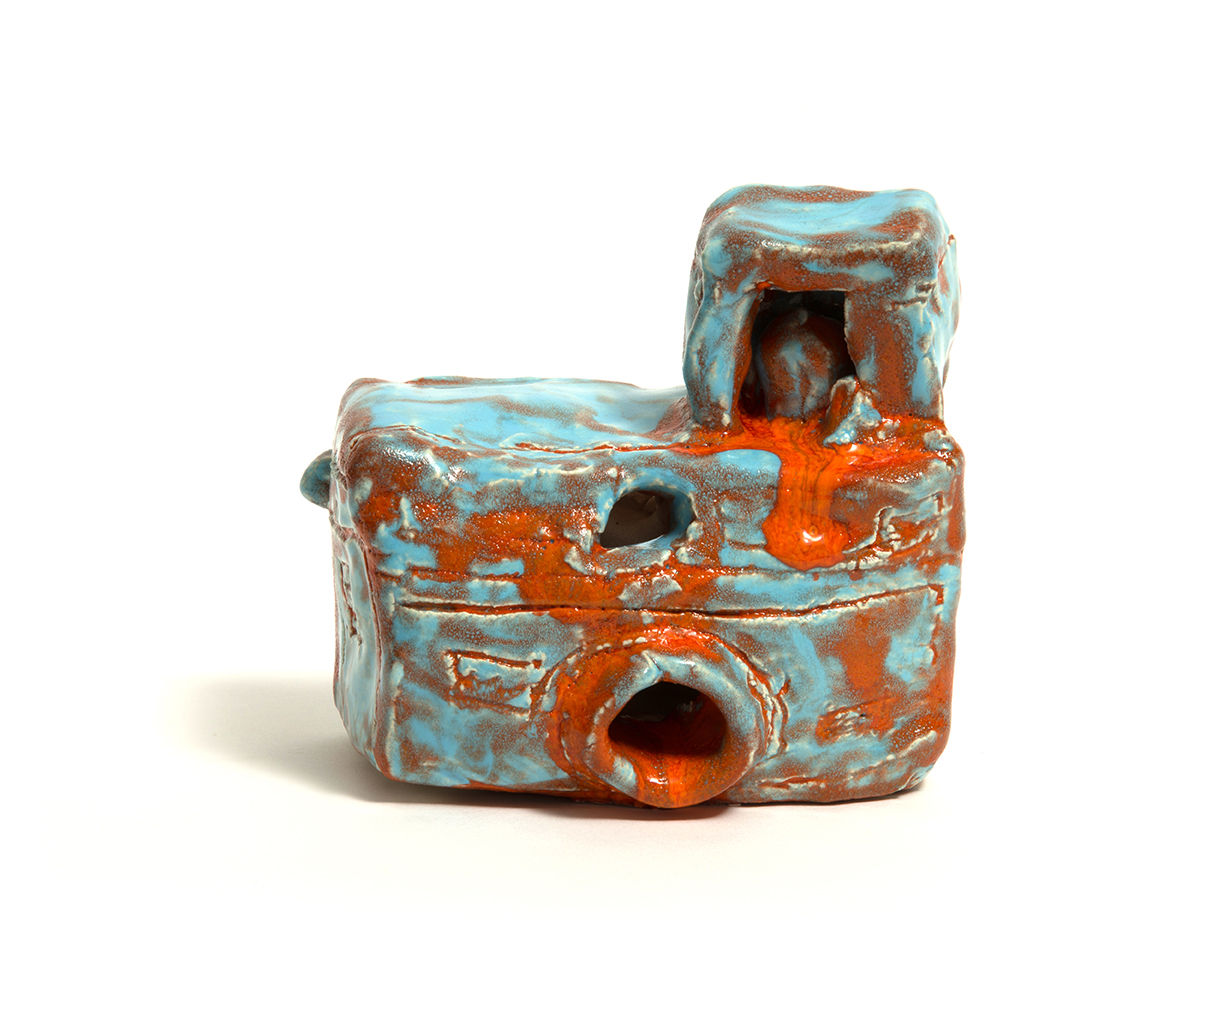 This photo shows a ceramic cameria with an orange and blue glaze